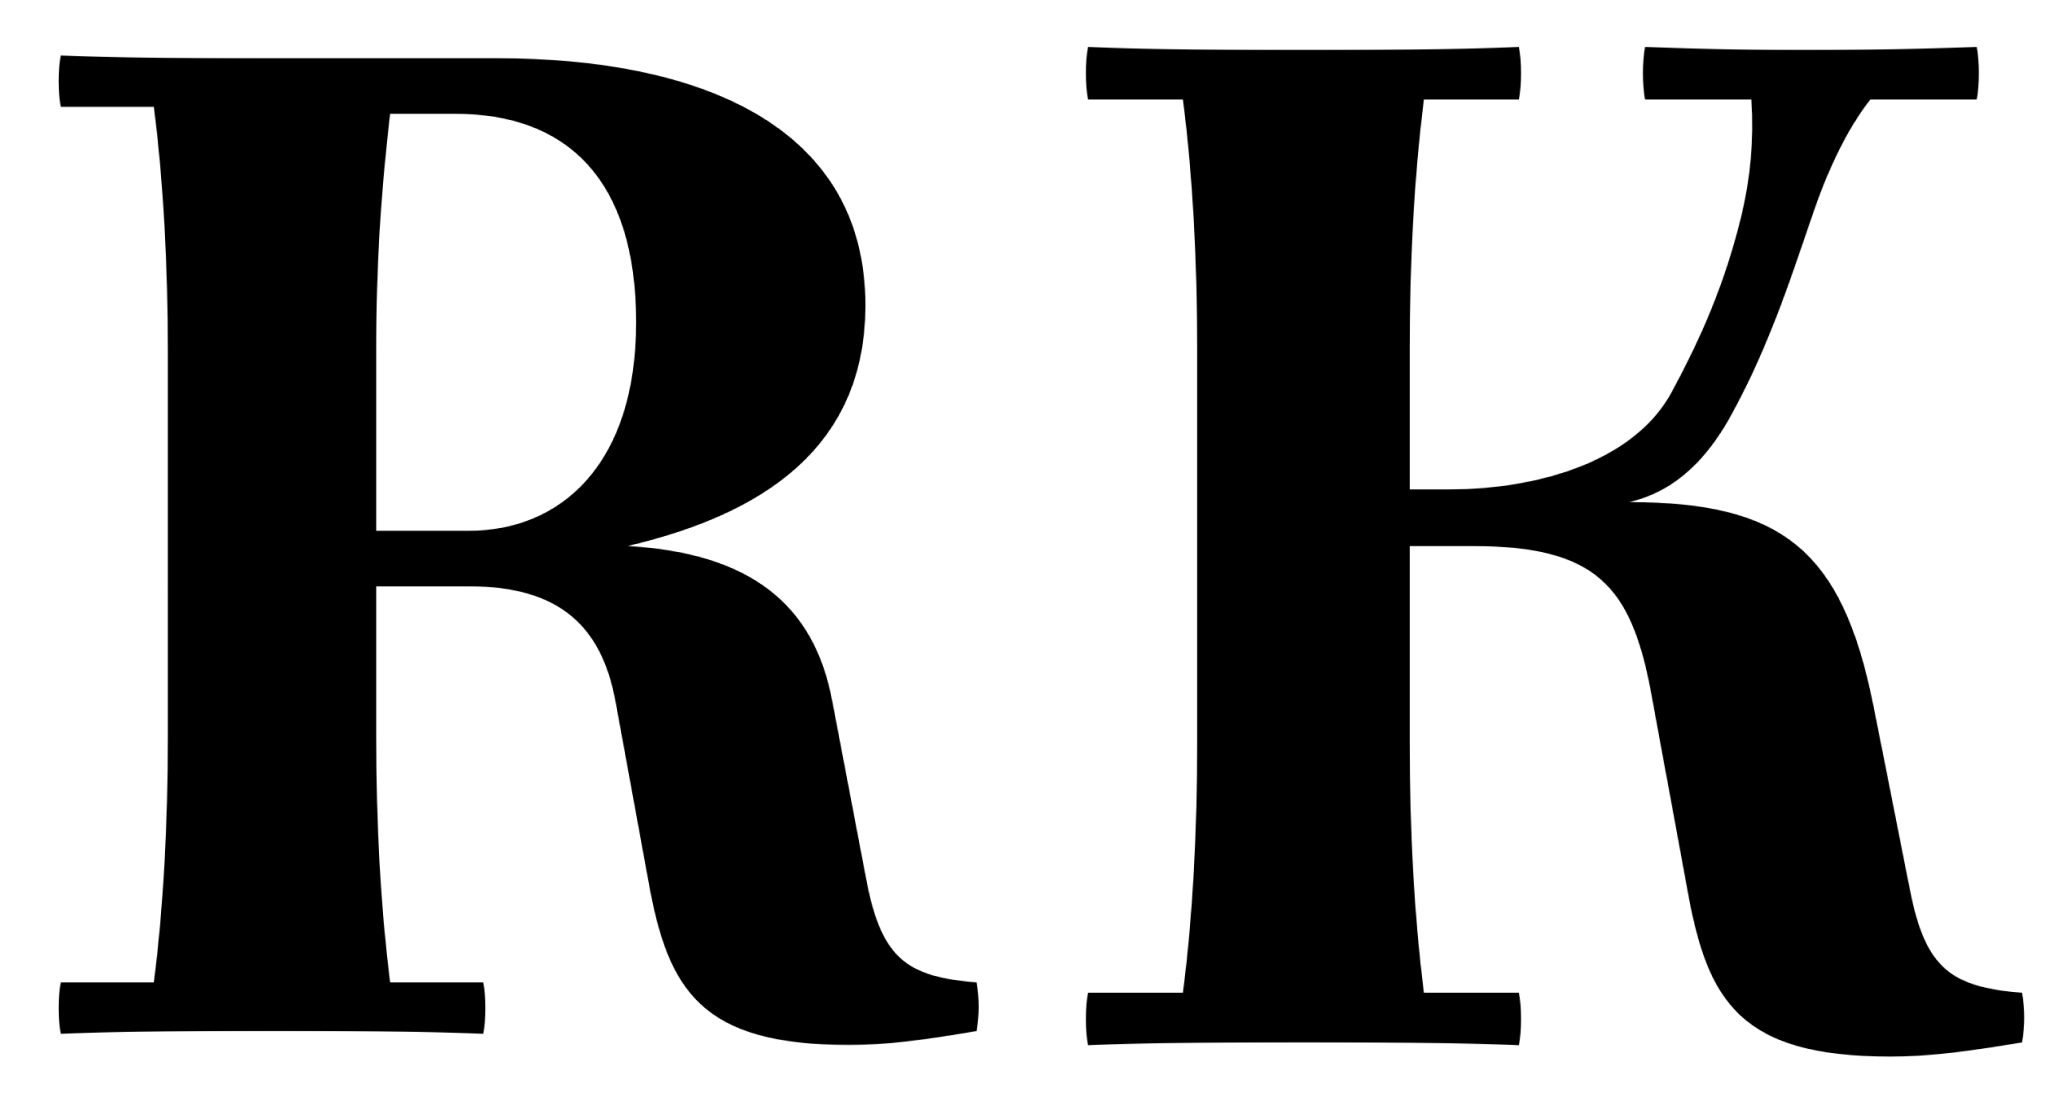 Szeryfowe wielkie litery „R” i „K” z zaokrąglonymi elementami